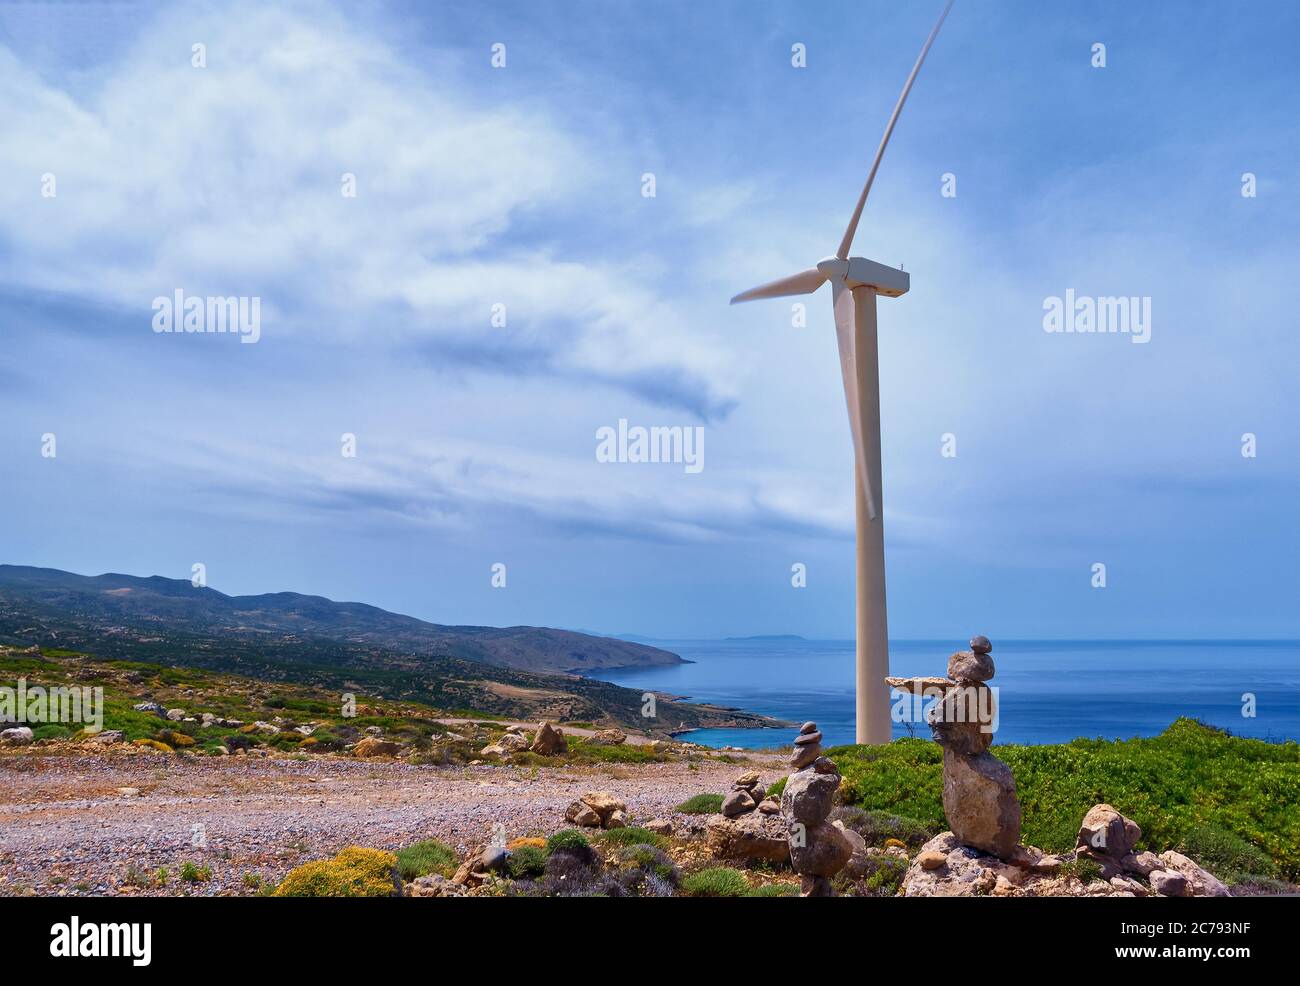 Eine Windmühle Turbine, Straße und balancierende Steine auf dem Hügel der Küste in bunten Landschaft bei dynamischen blauen Himmel an klaren sonnigen Sommertag. Stockfoto